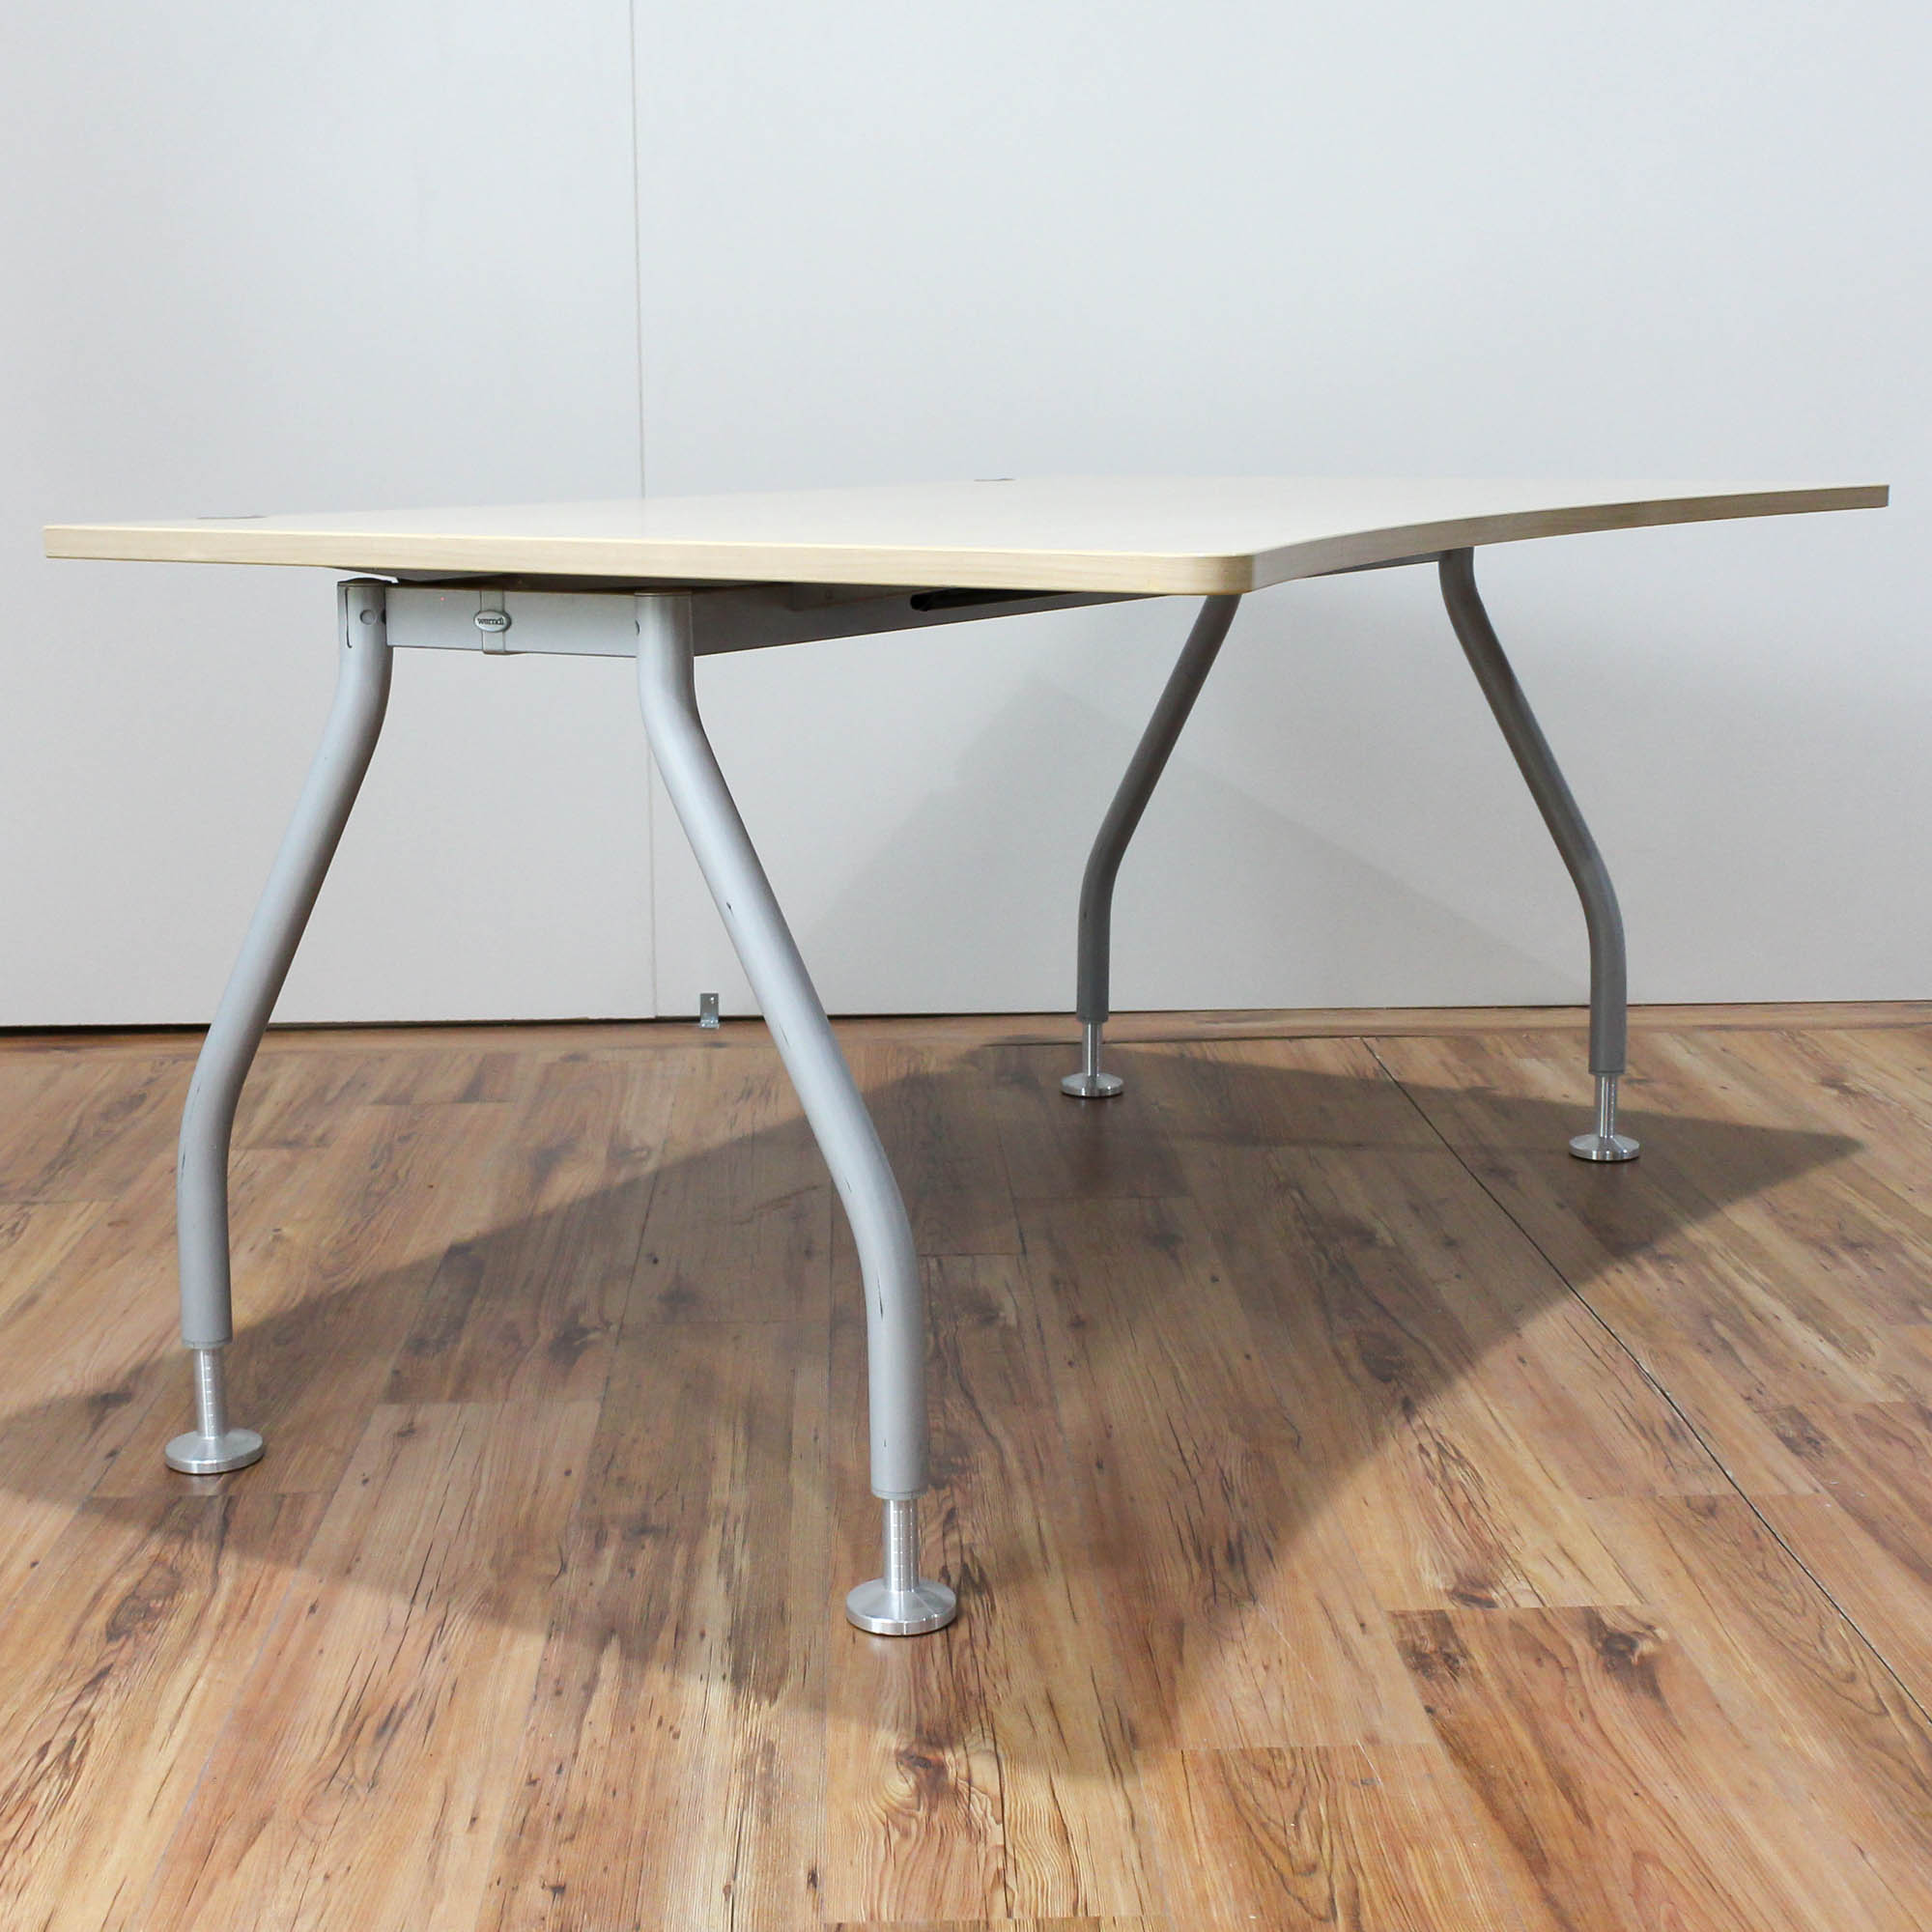 Werndl Schreibtisch - 160x100cm CP-Form in Ahorn - A-Fußgestell in silber